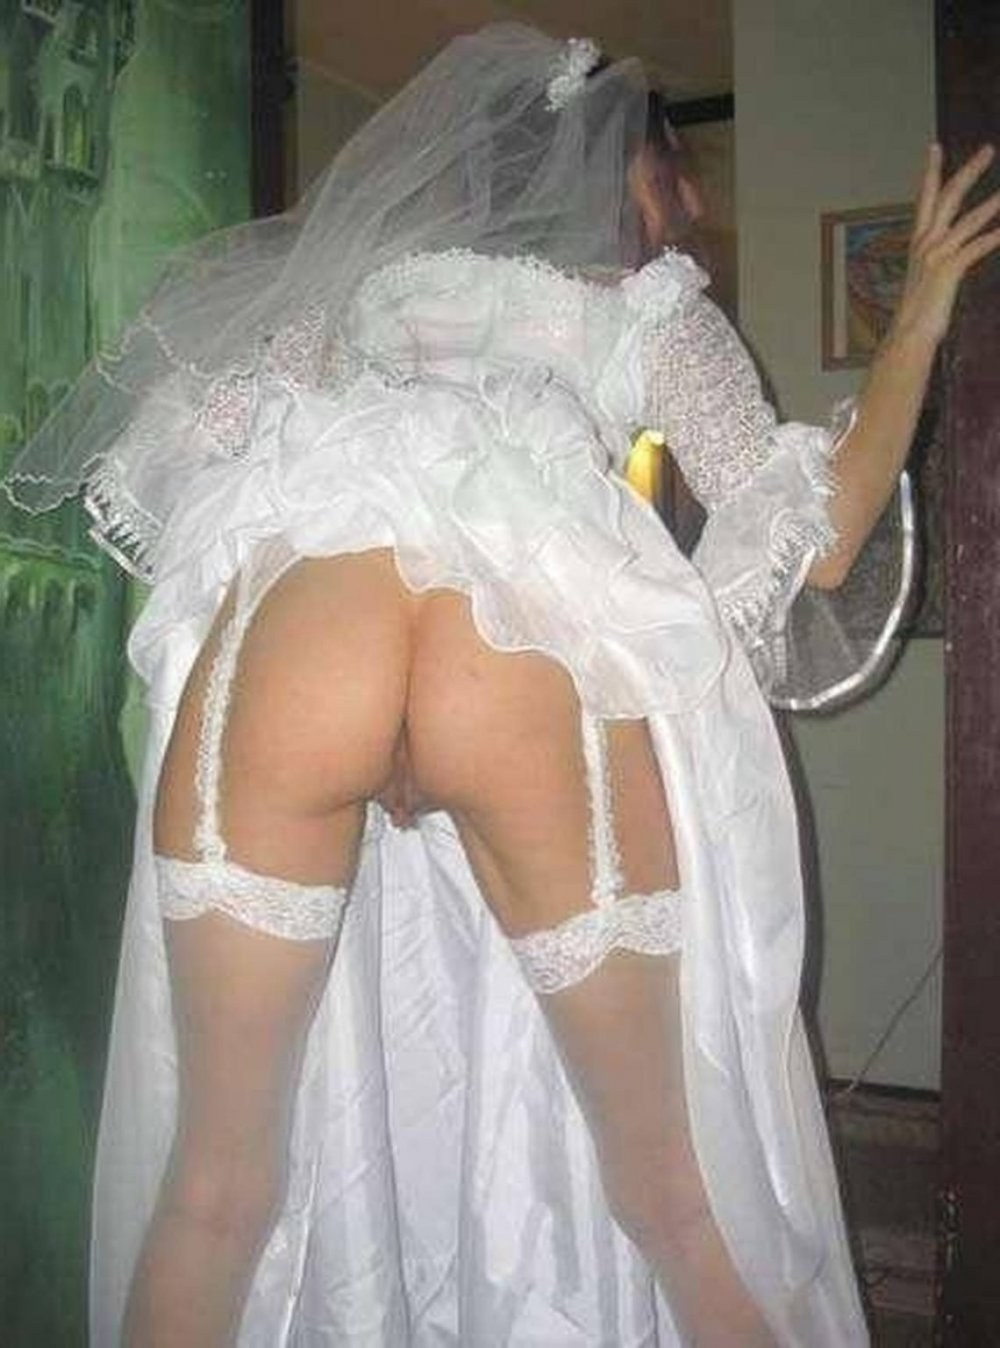 Порно невеста без трусиков: видео на intim-top.ru